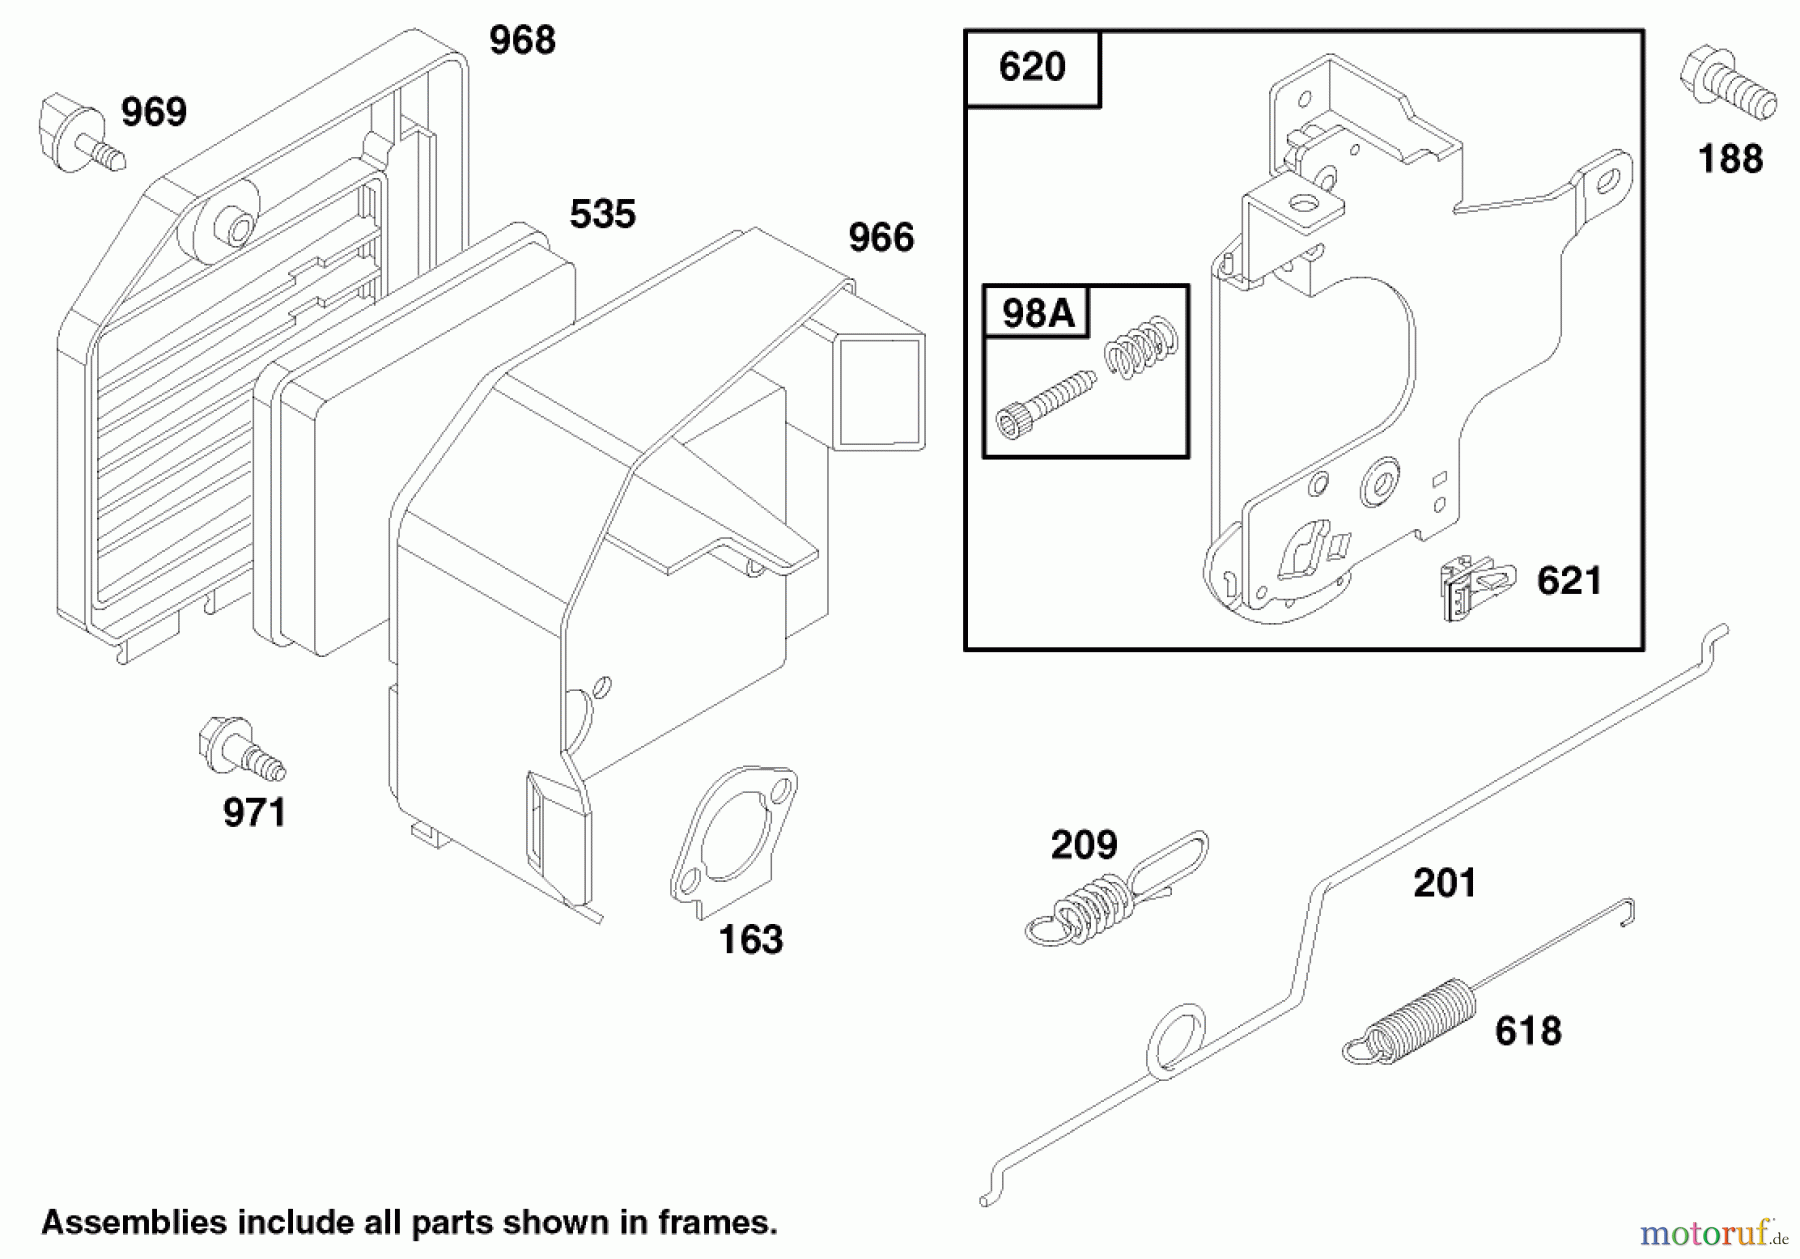  Toro Neu Mowers, Walk-Behind Seite 1 20483 - Toro Lawnmower, 1997 (790000001-799999999) ENGINE GTS 150 (MODEL NO. 20483 ONLY) #2